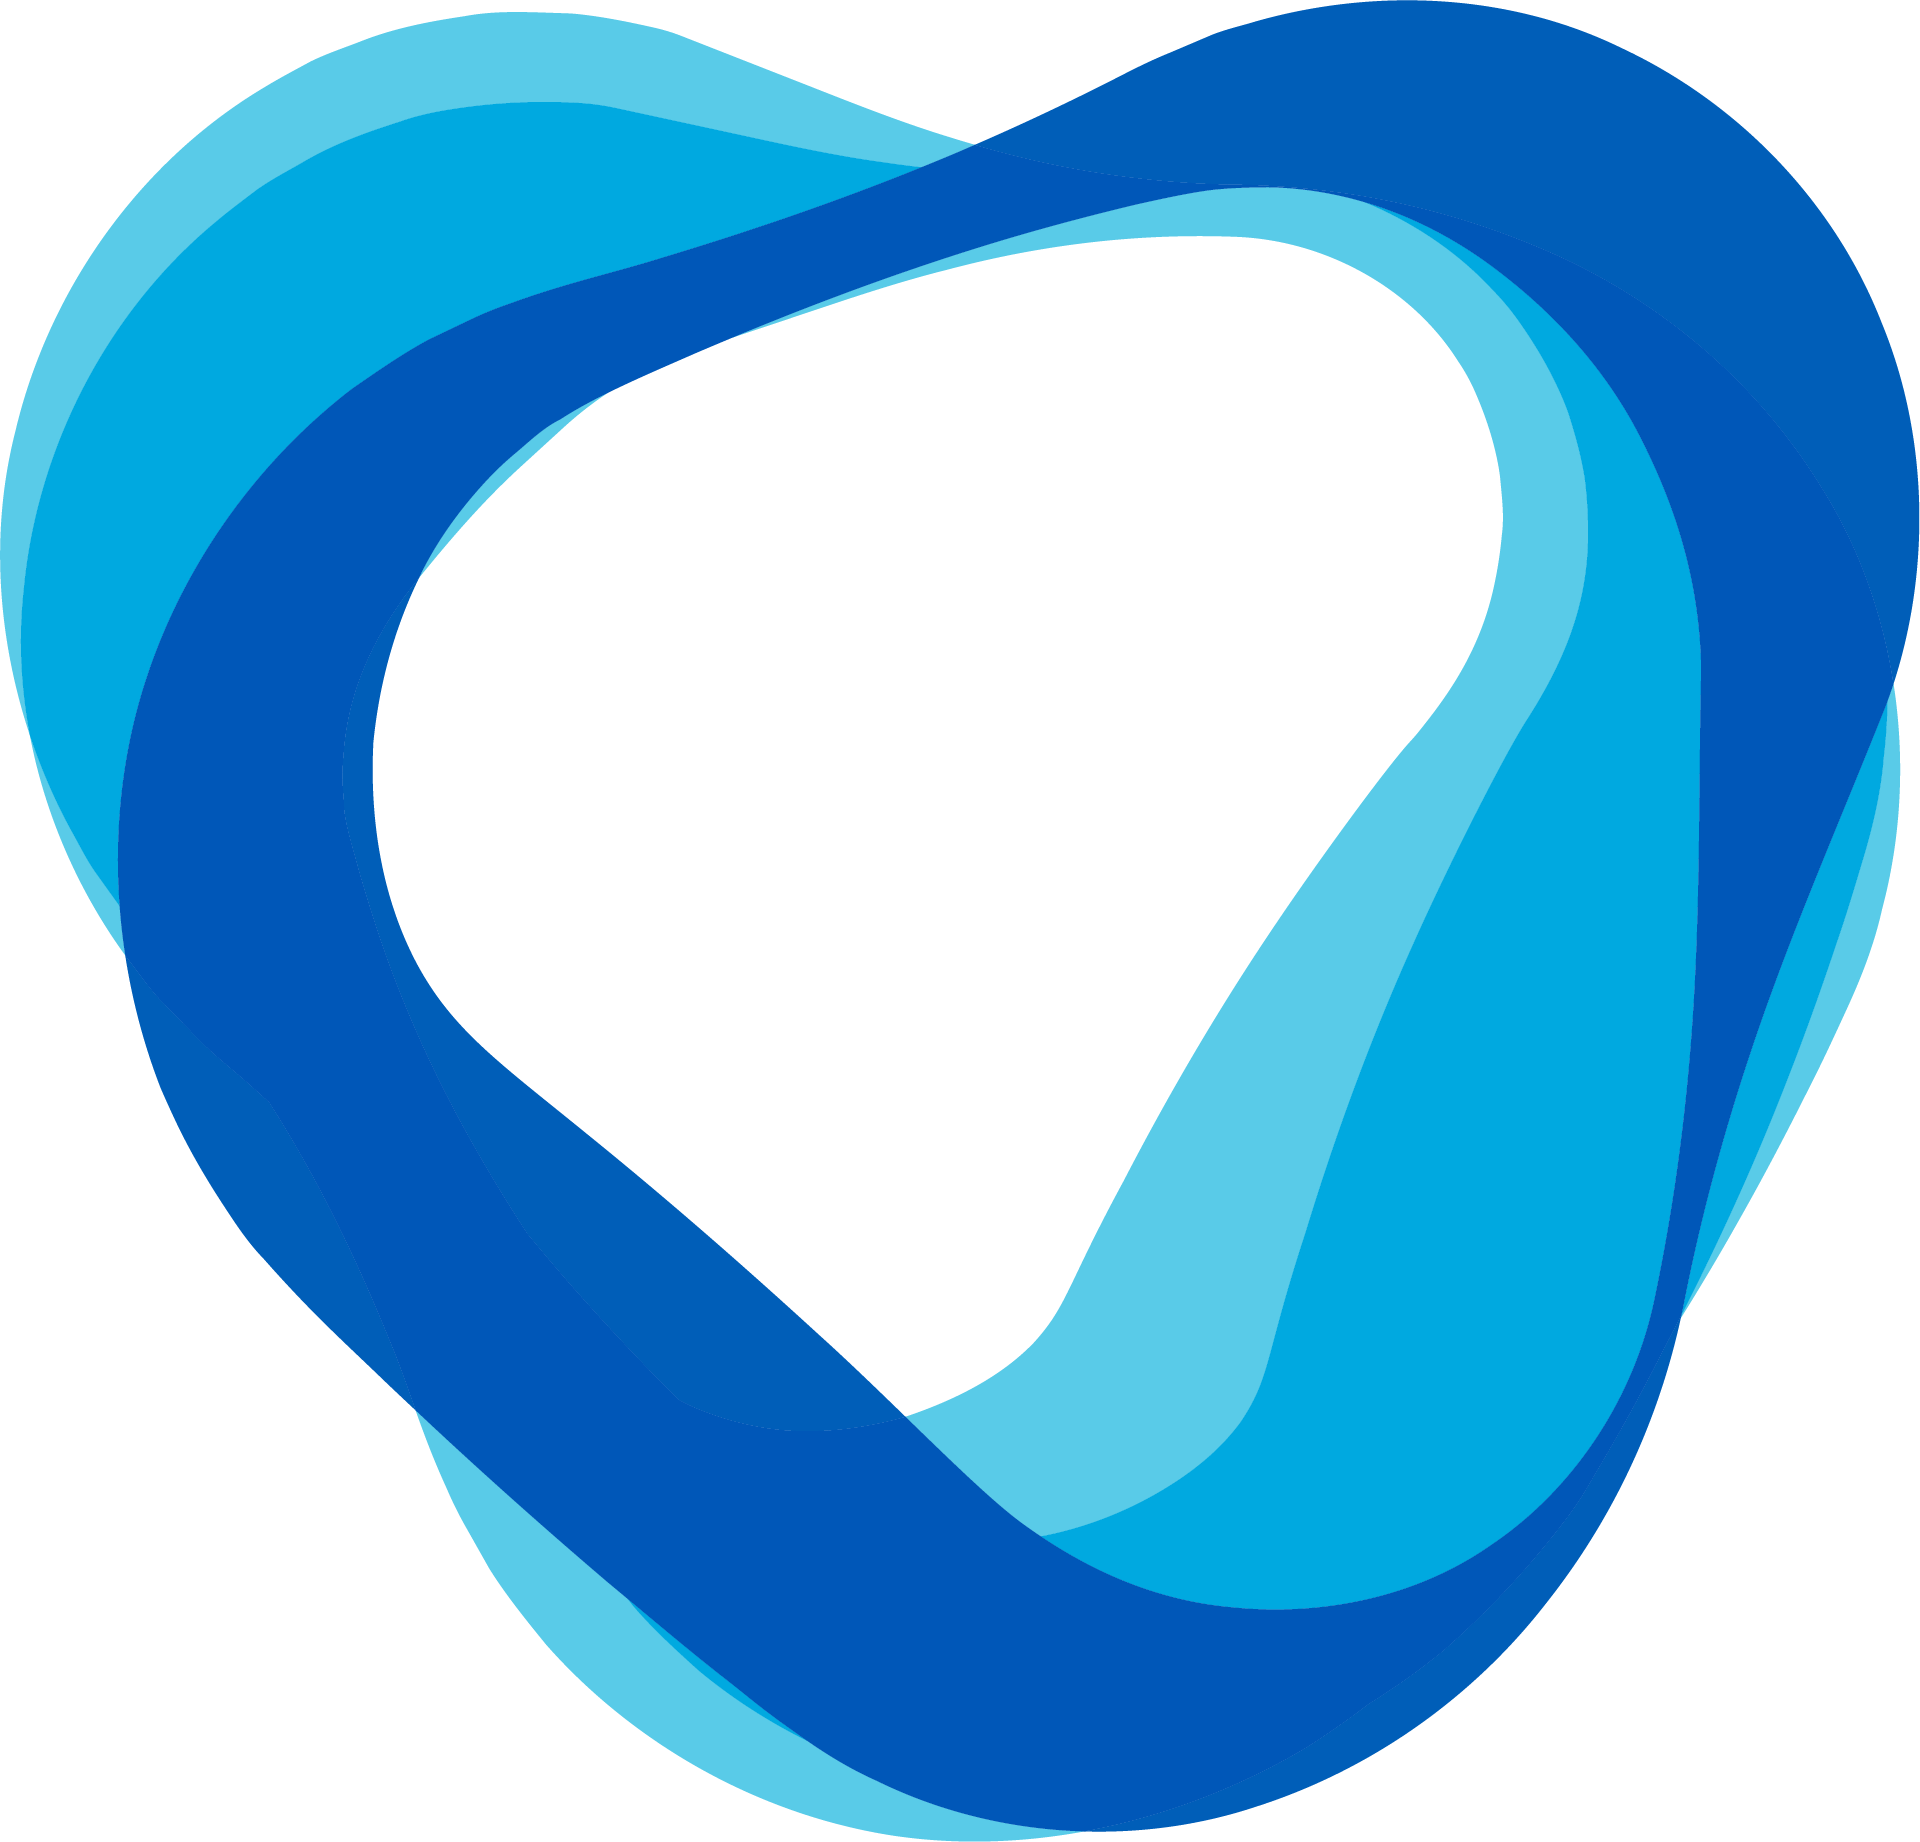 logo-tripleblue